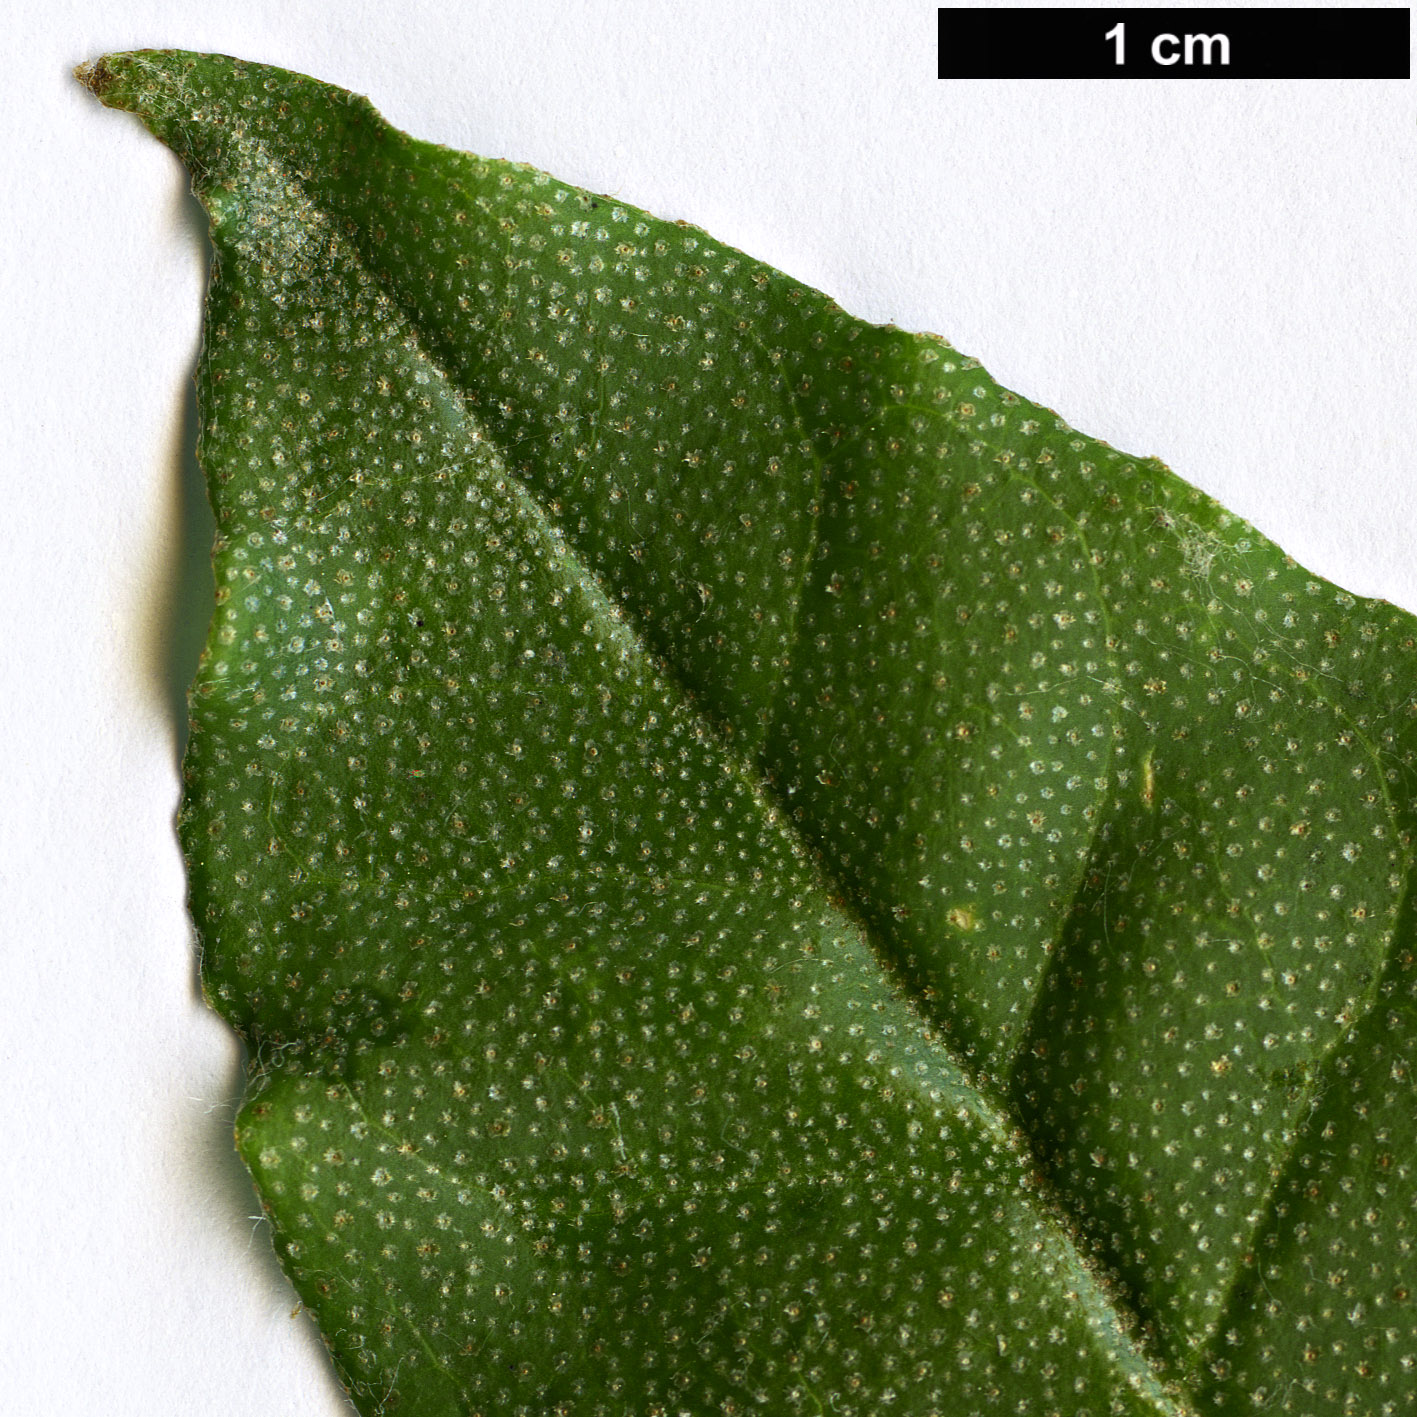 High resolution image: Family: Elaeagnaceae - Genus: Elaeagnus - Taxon: latifolia